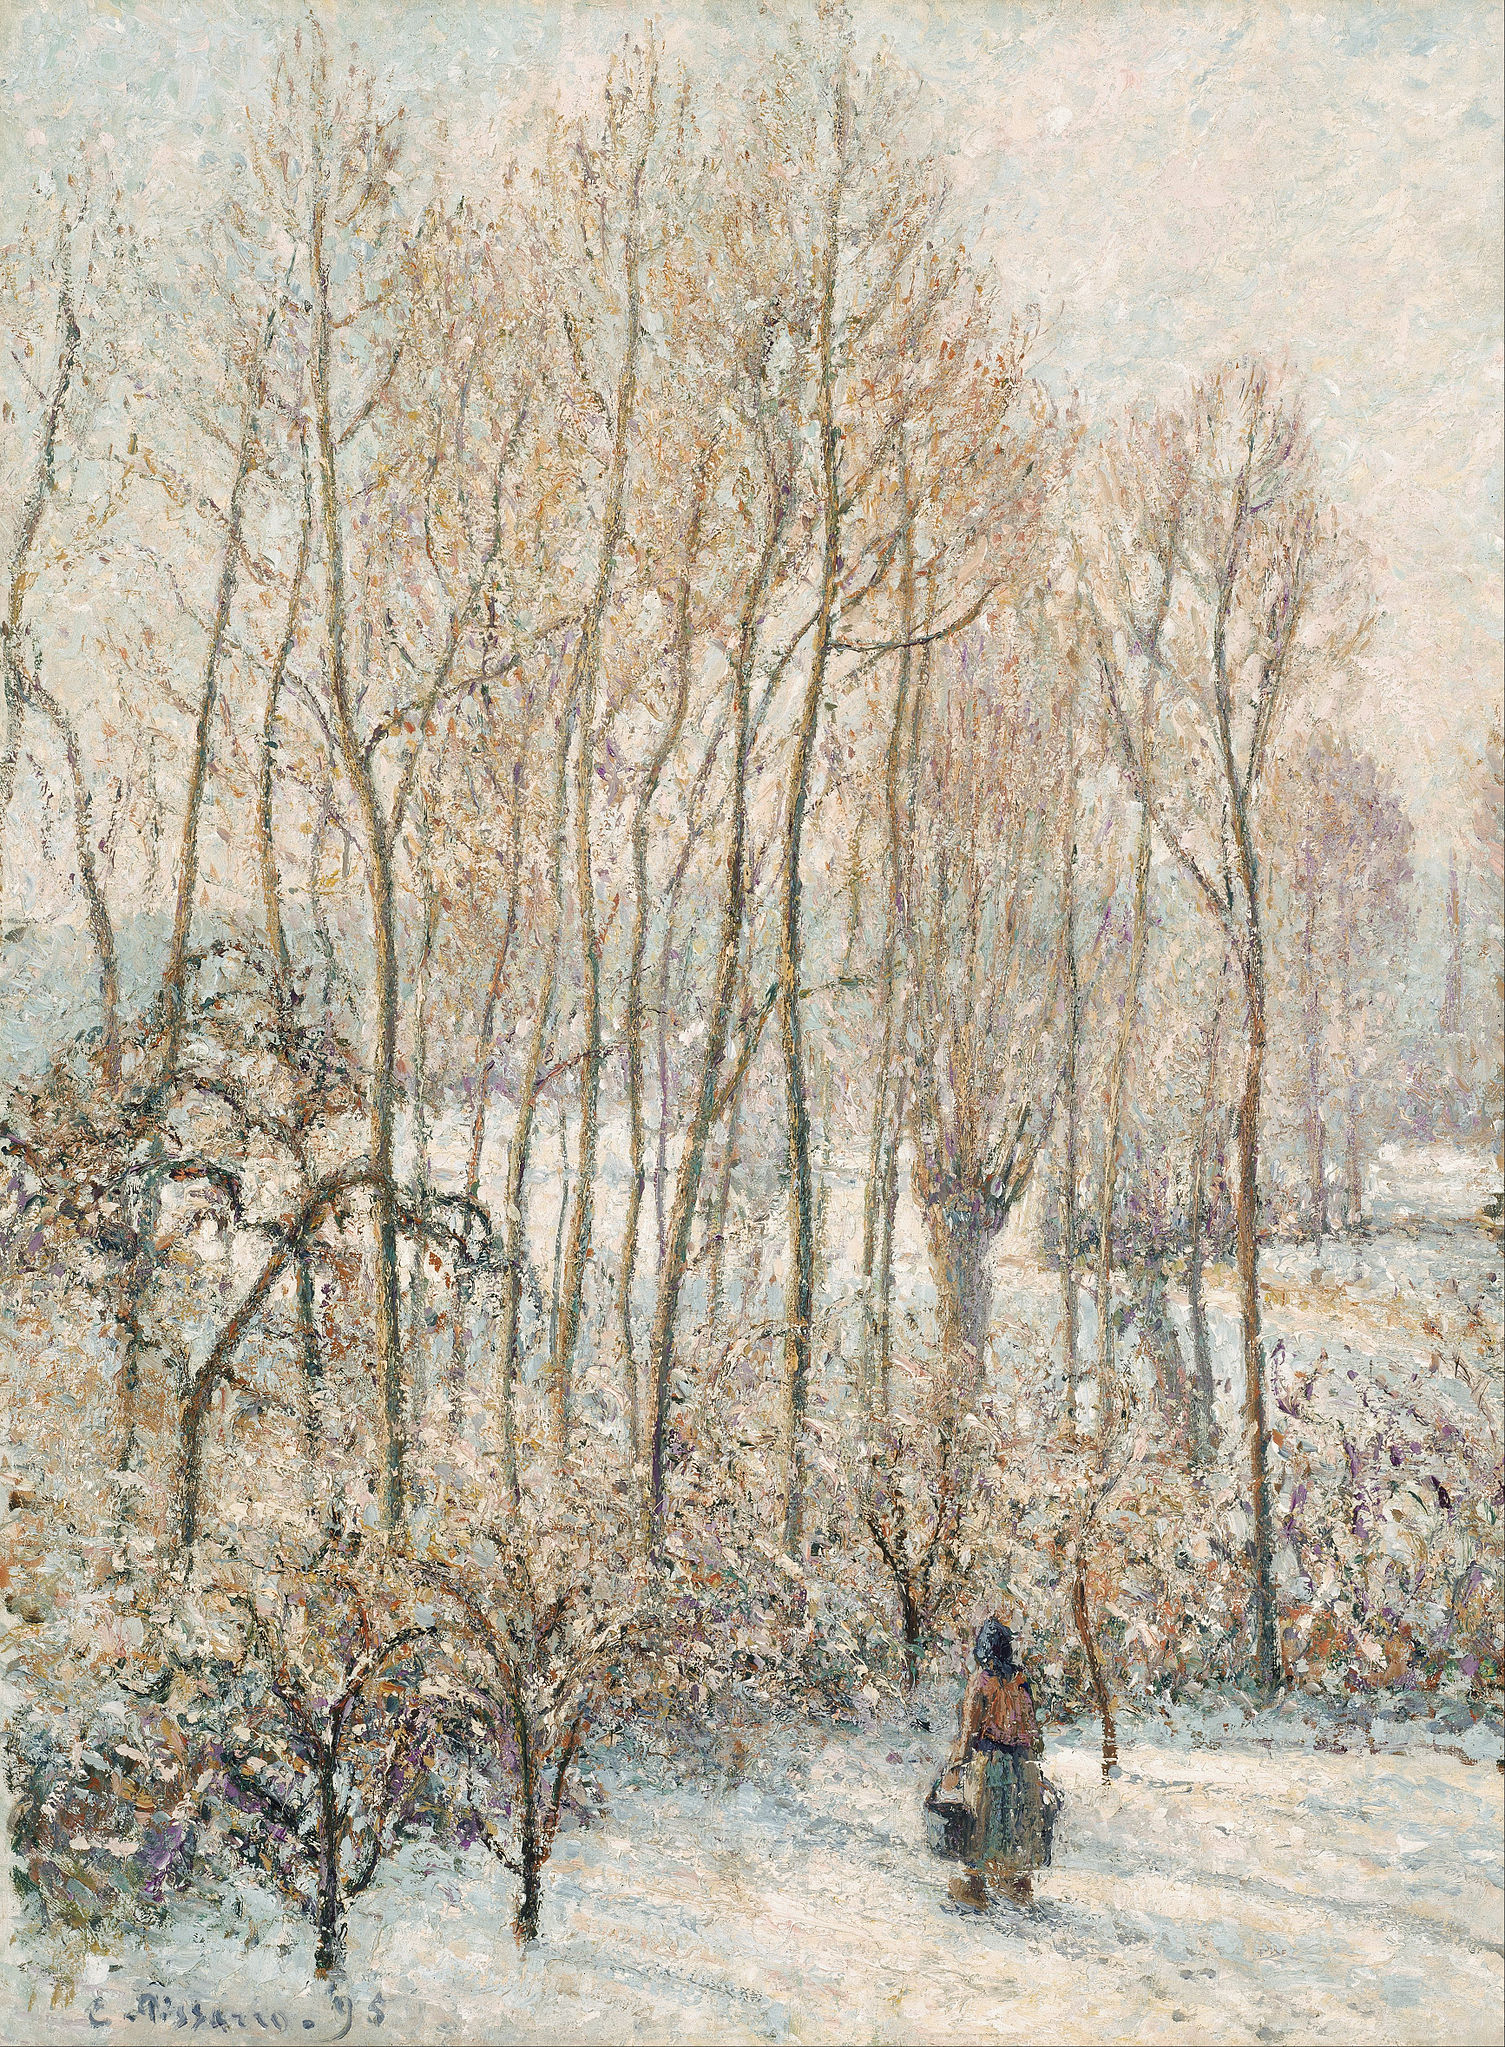 Luz do amanhecer na neve, Éragny-sur-Epte by Camille Pissarro - 1895 - 82.3 x 61.6 cm 